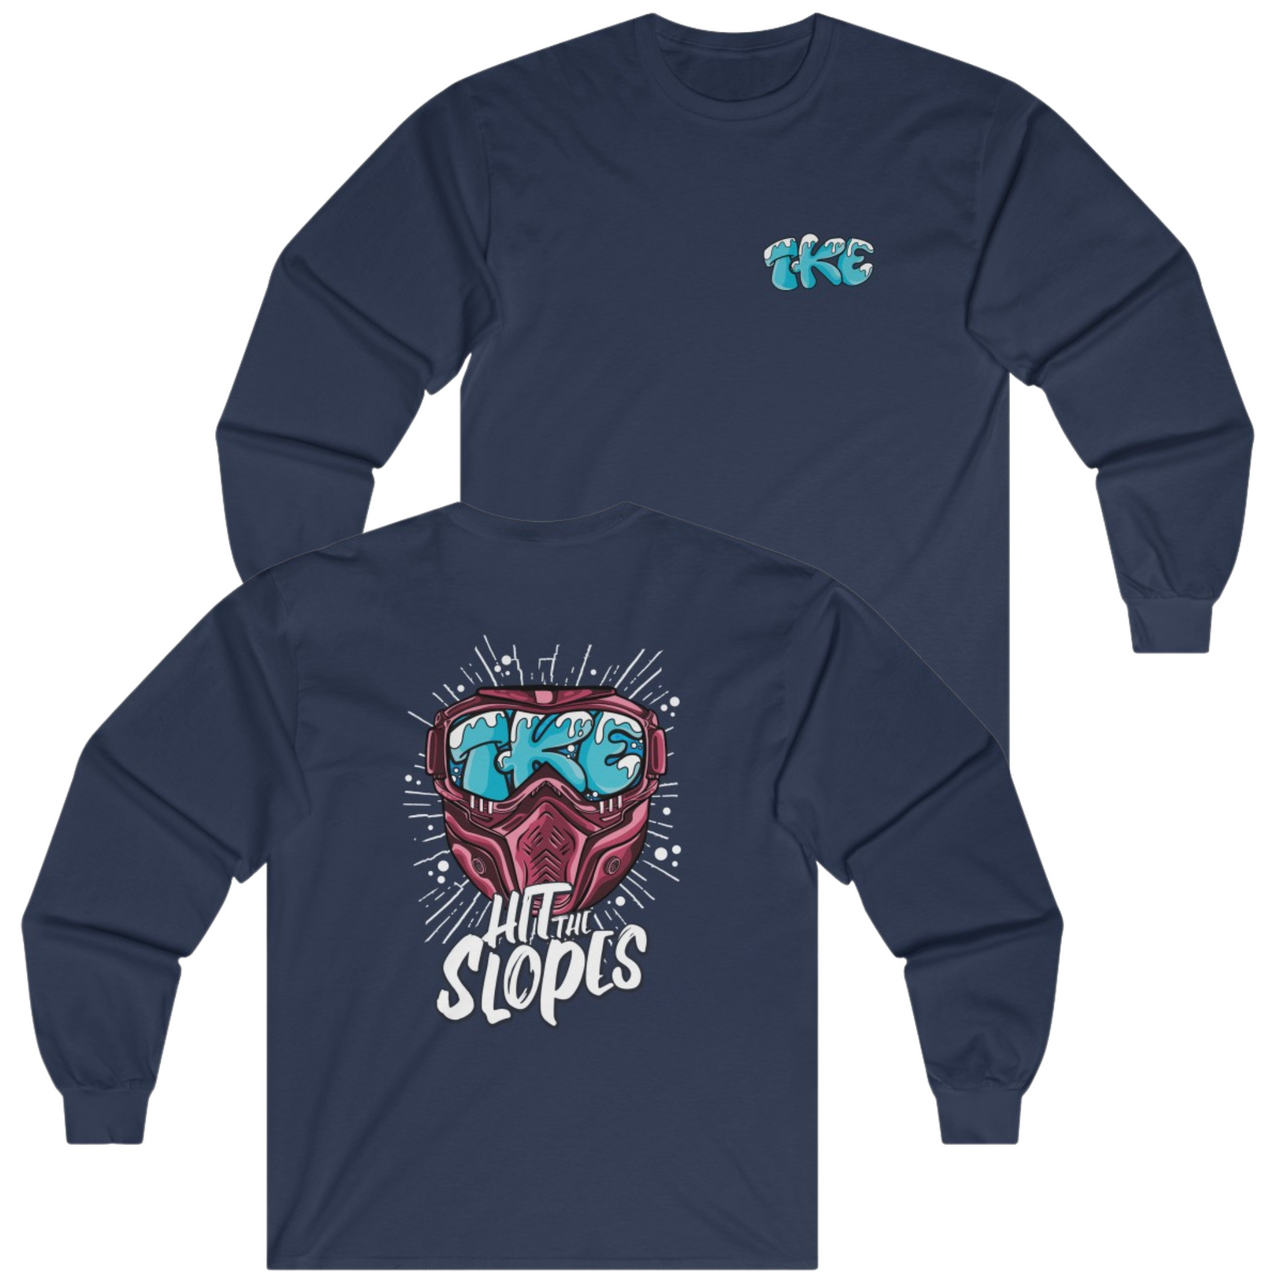 Navy Tau Kappa Epsilon Graphic Long Sleeve T-Shirt | Hit the Slopes | TKE Clothing and Merchandise